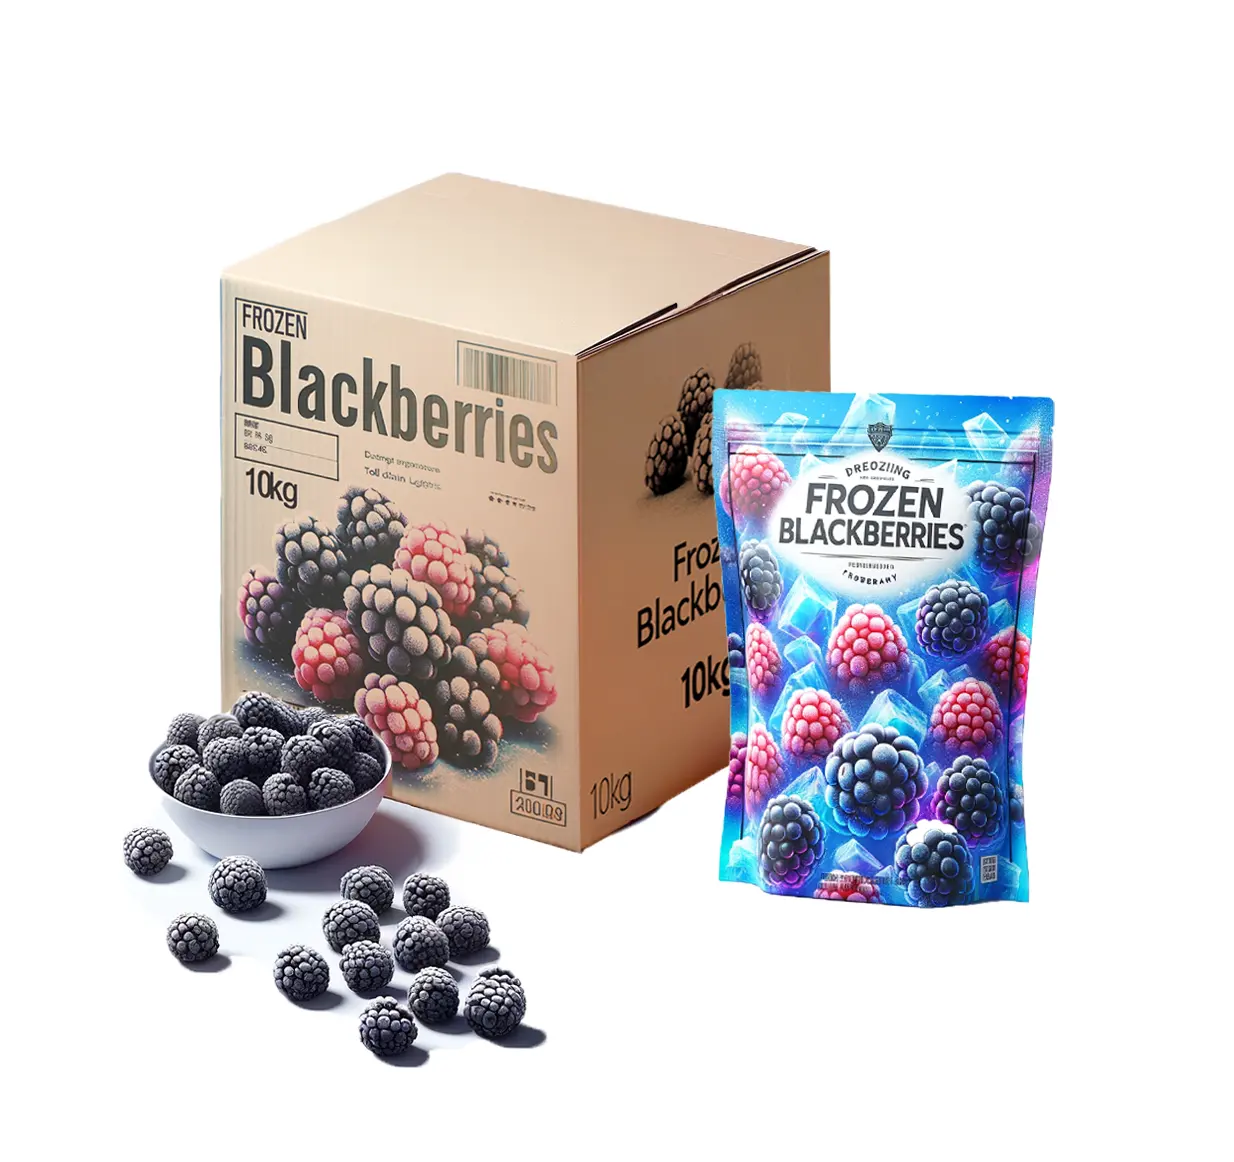 Köstliche gefrorene Blackberry Gefrierbares bio-Gefrorenes frisches Blackberry ideal für Vertriebspartner und Einzelhändler